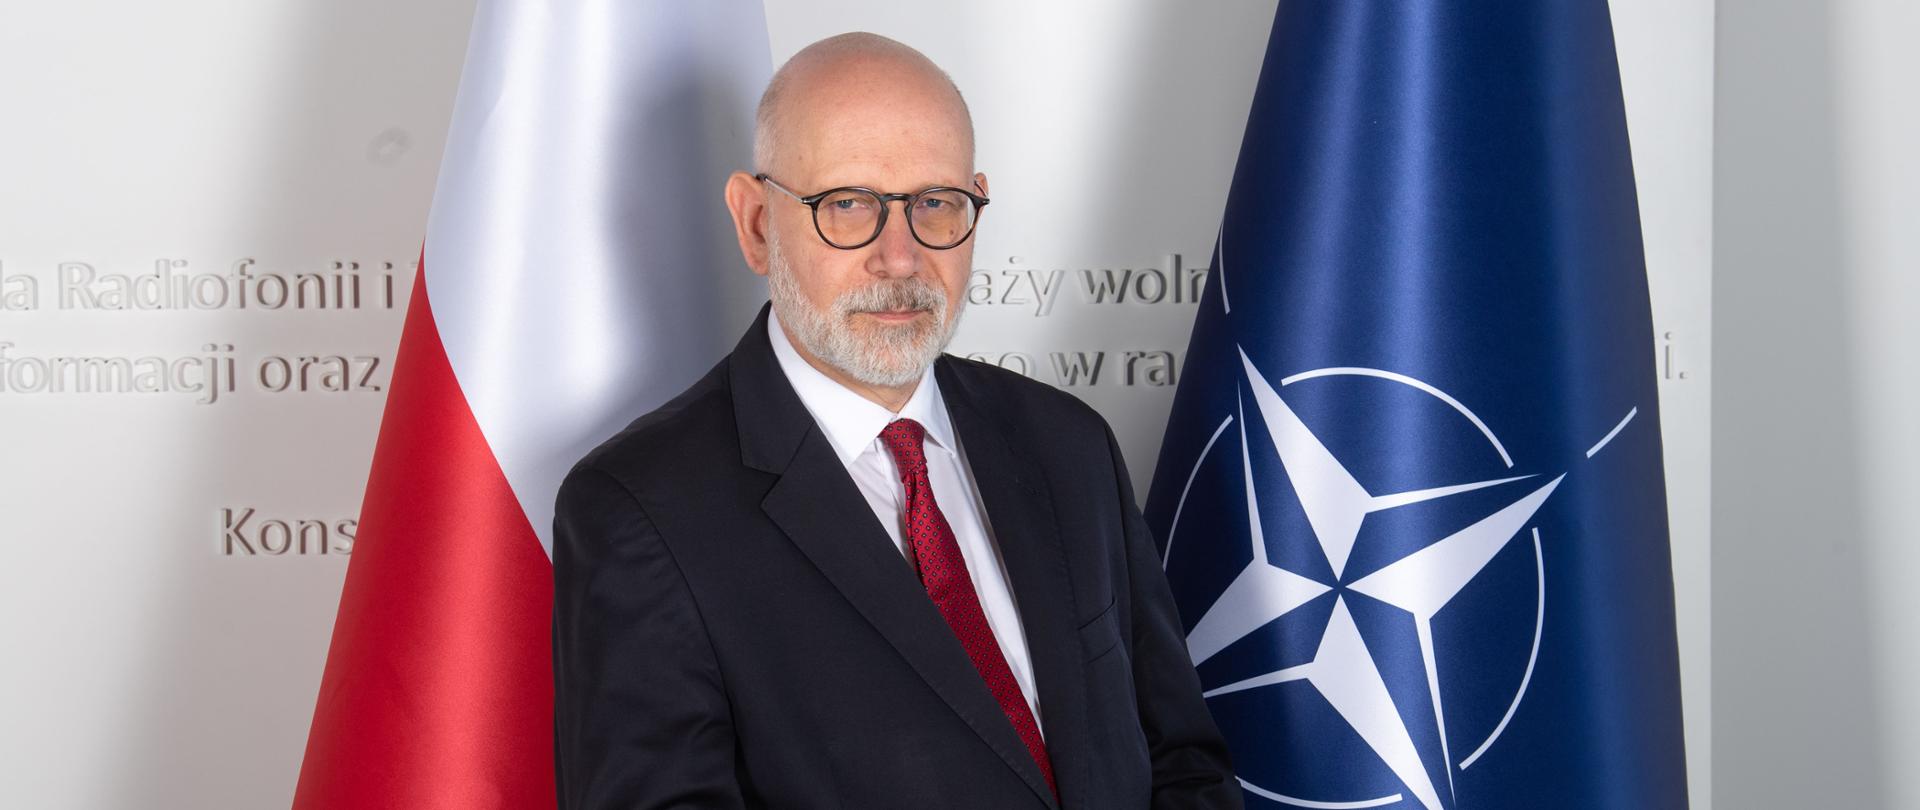 Przewodniczący KRRiT Maciej Świrski. Za nim po lewej stronie flaga biało-czerwona, po prawej stronie niebieska flaga NATO